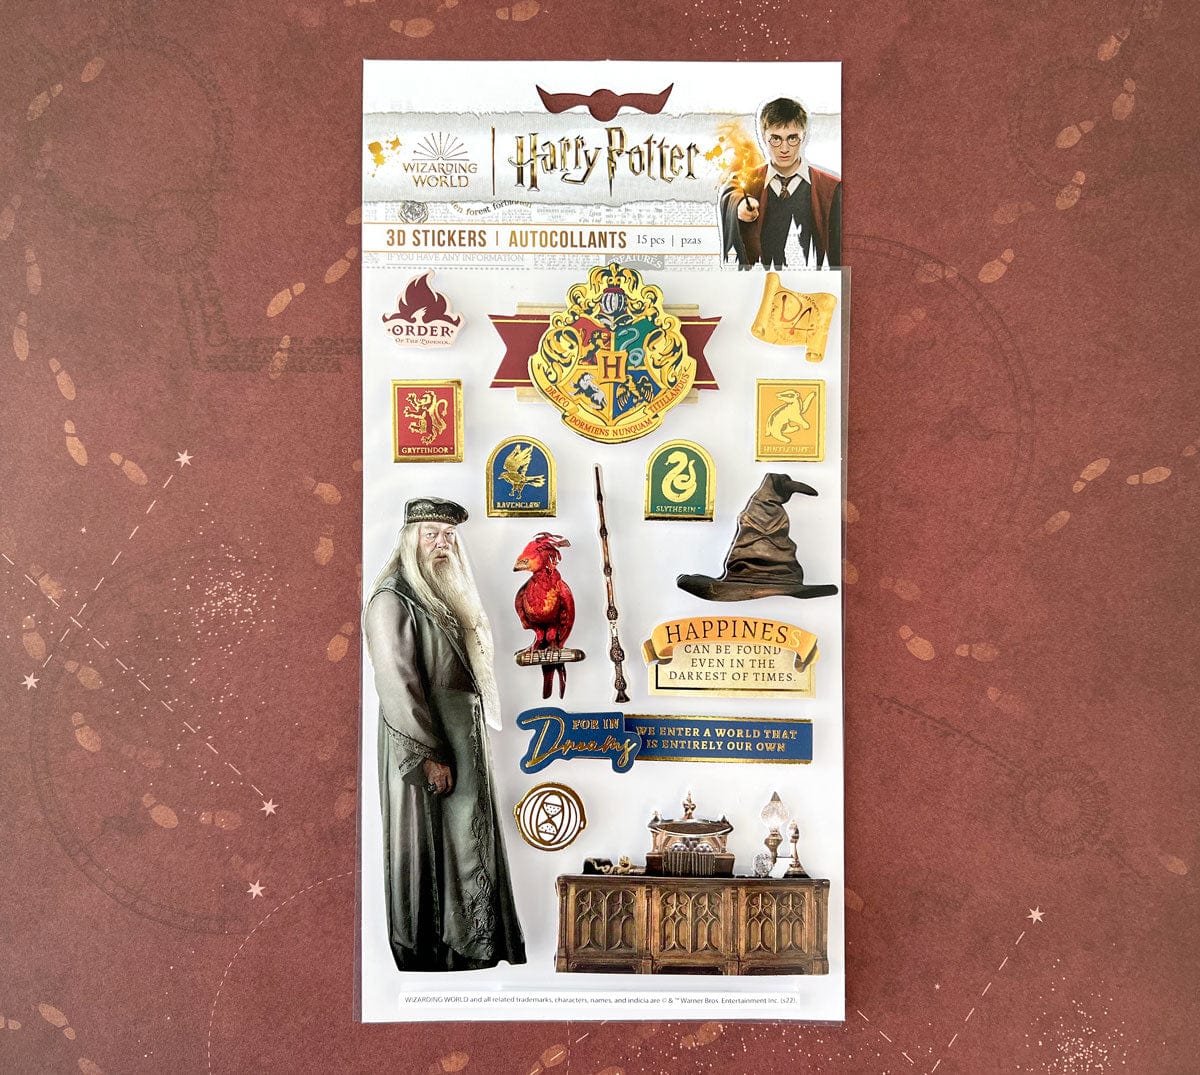 Harry Potter Stickers - Slytherin House Pride Enamel Sticker